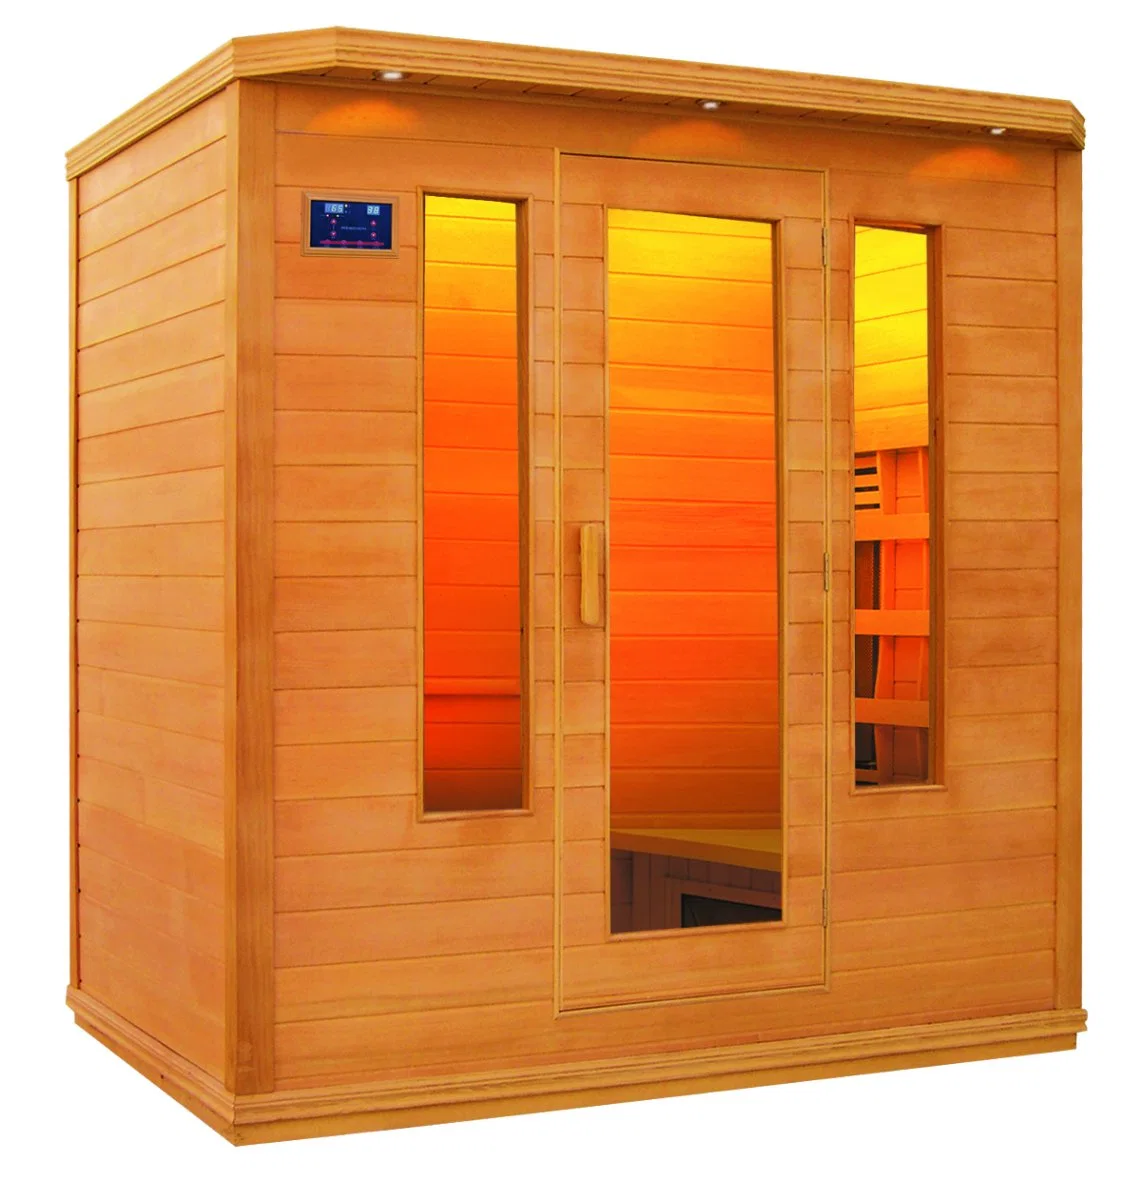 Le bois massif de Luxe Chambre Salle de vapeur sèche Sauna Sauna Infrarouge